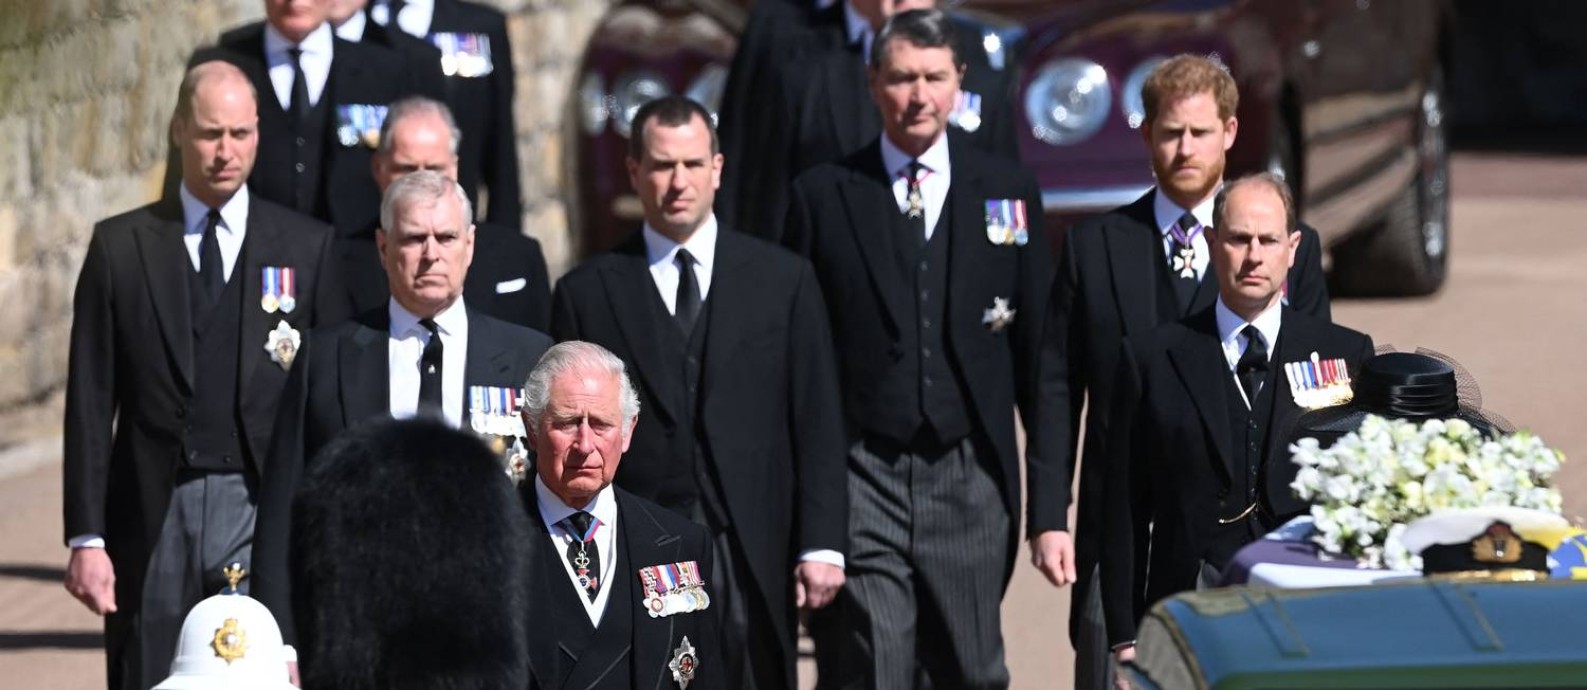 O príncipe William (à esquerda, ao fundo), seu irmão Harry (à direita) e o príncipe Charles (atrás do soldado) na procissão funerária de Philip no Castelo de Windsor Foto: LEON NEAL / AFP